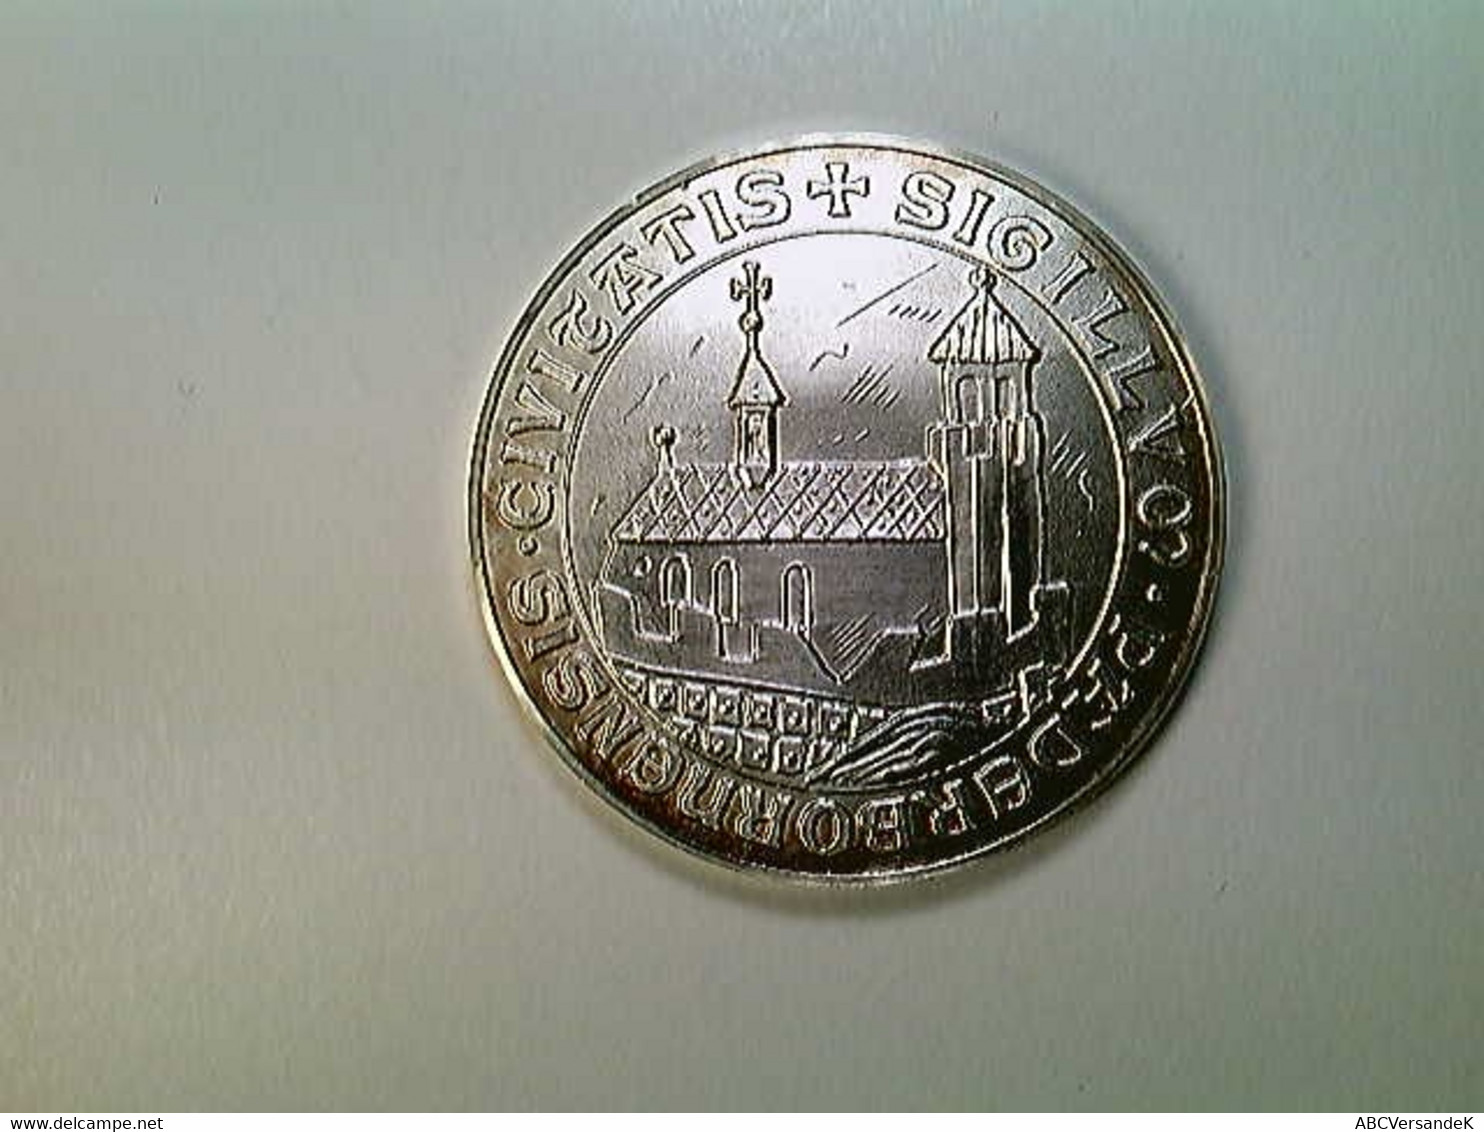 Medaille Paderborn 1650 Nach Merian, 40 Mm, 30 Gr., Silber, SELTEN! - Numismatics